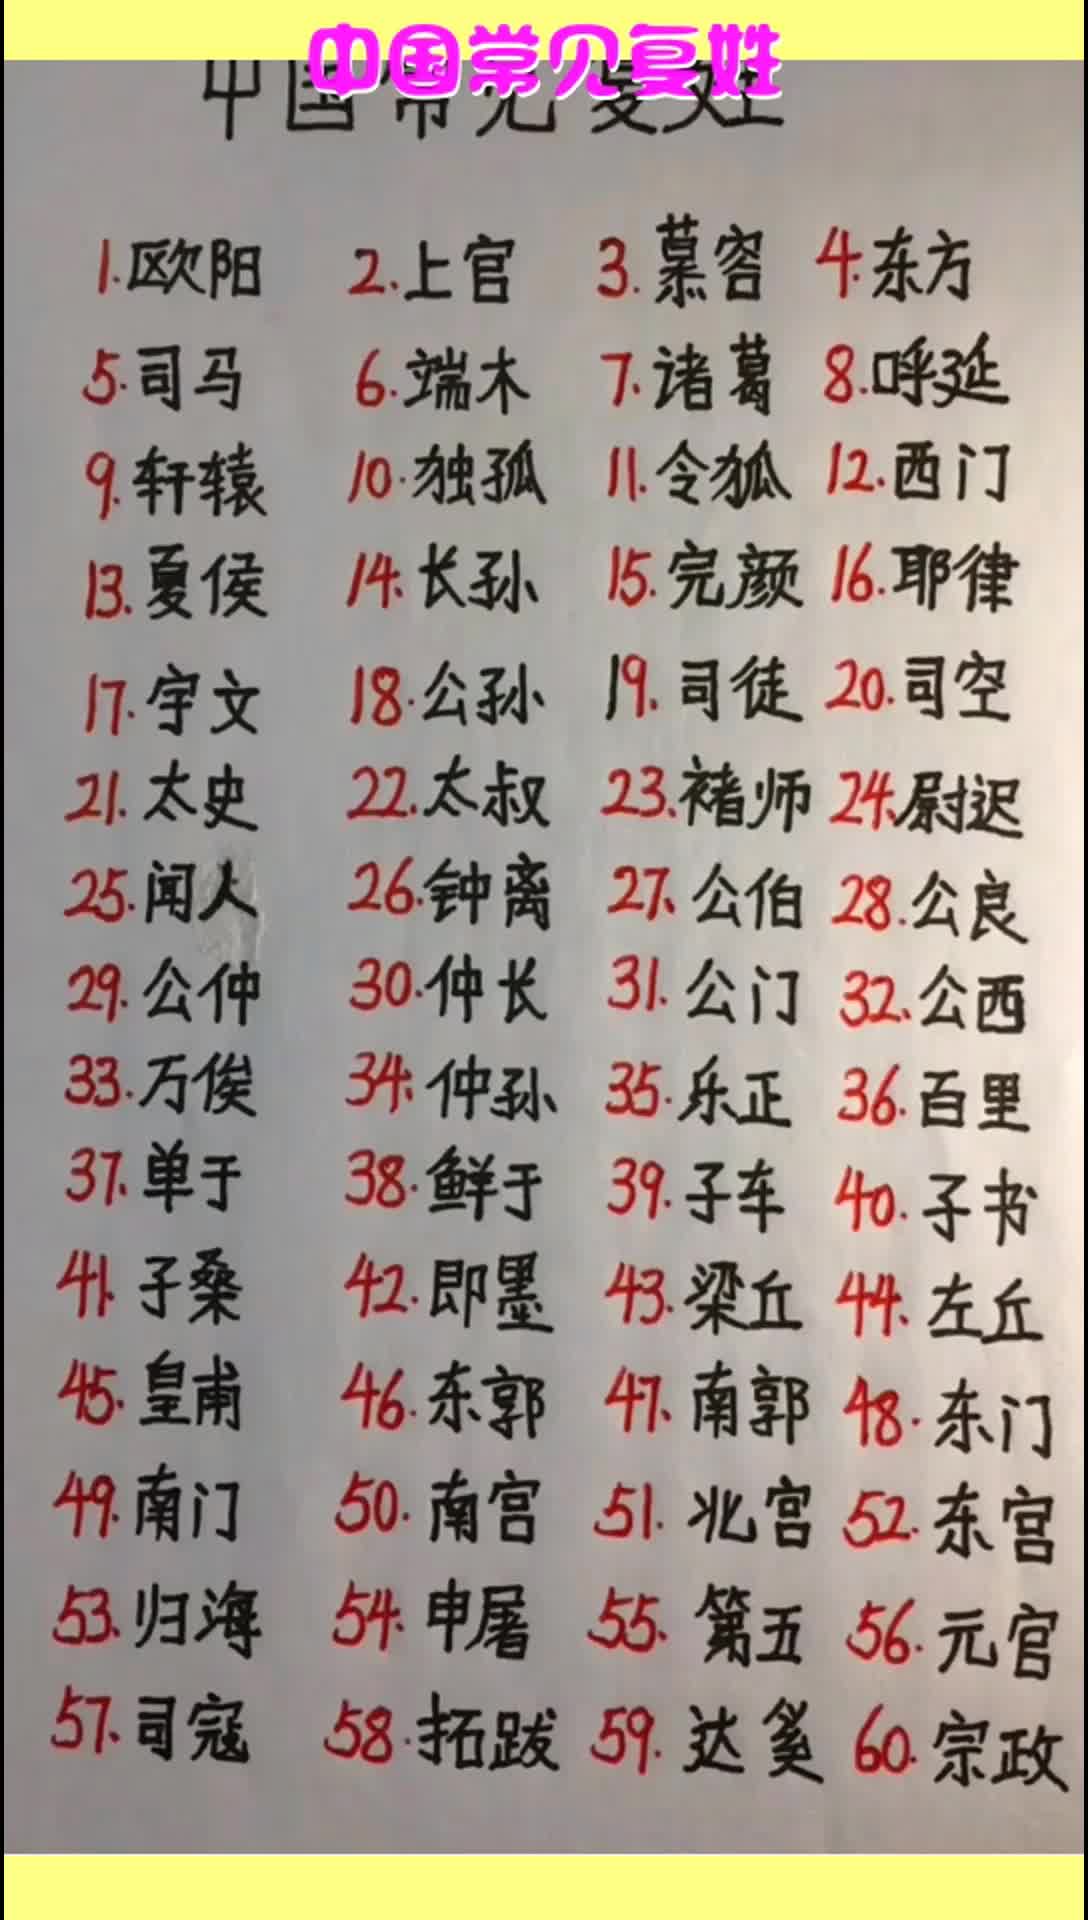 中国的复姓有哪些_现存的复姓有多少 - 工作号